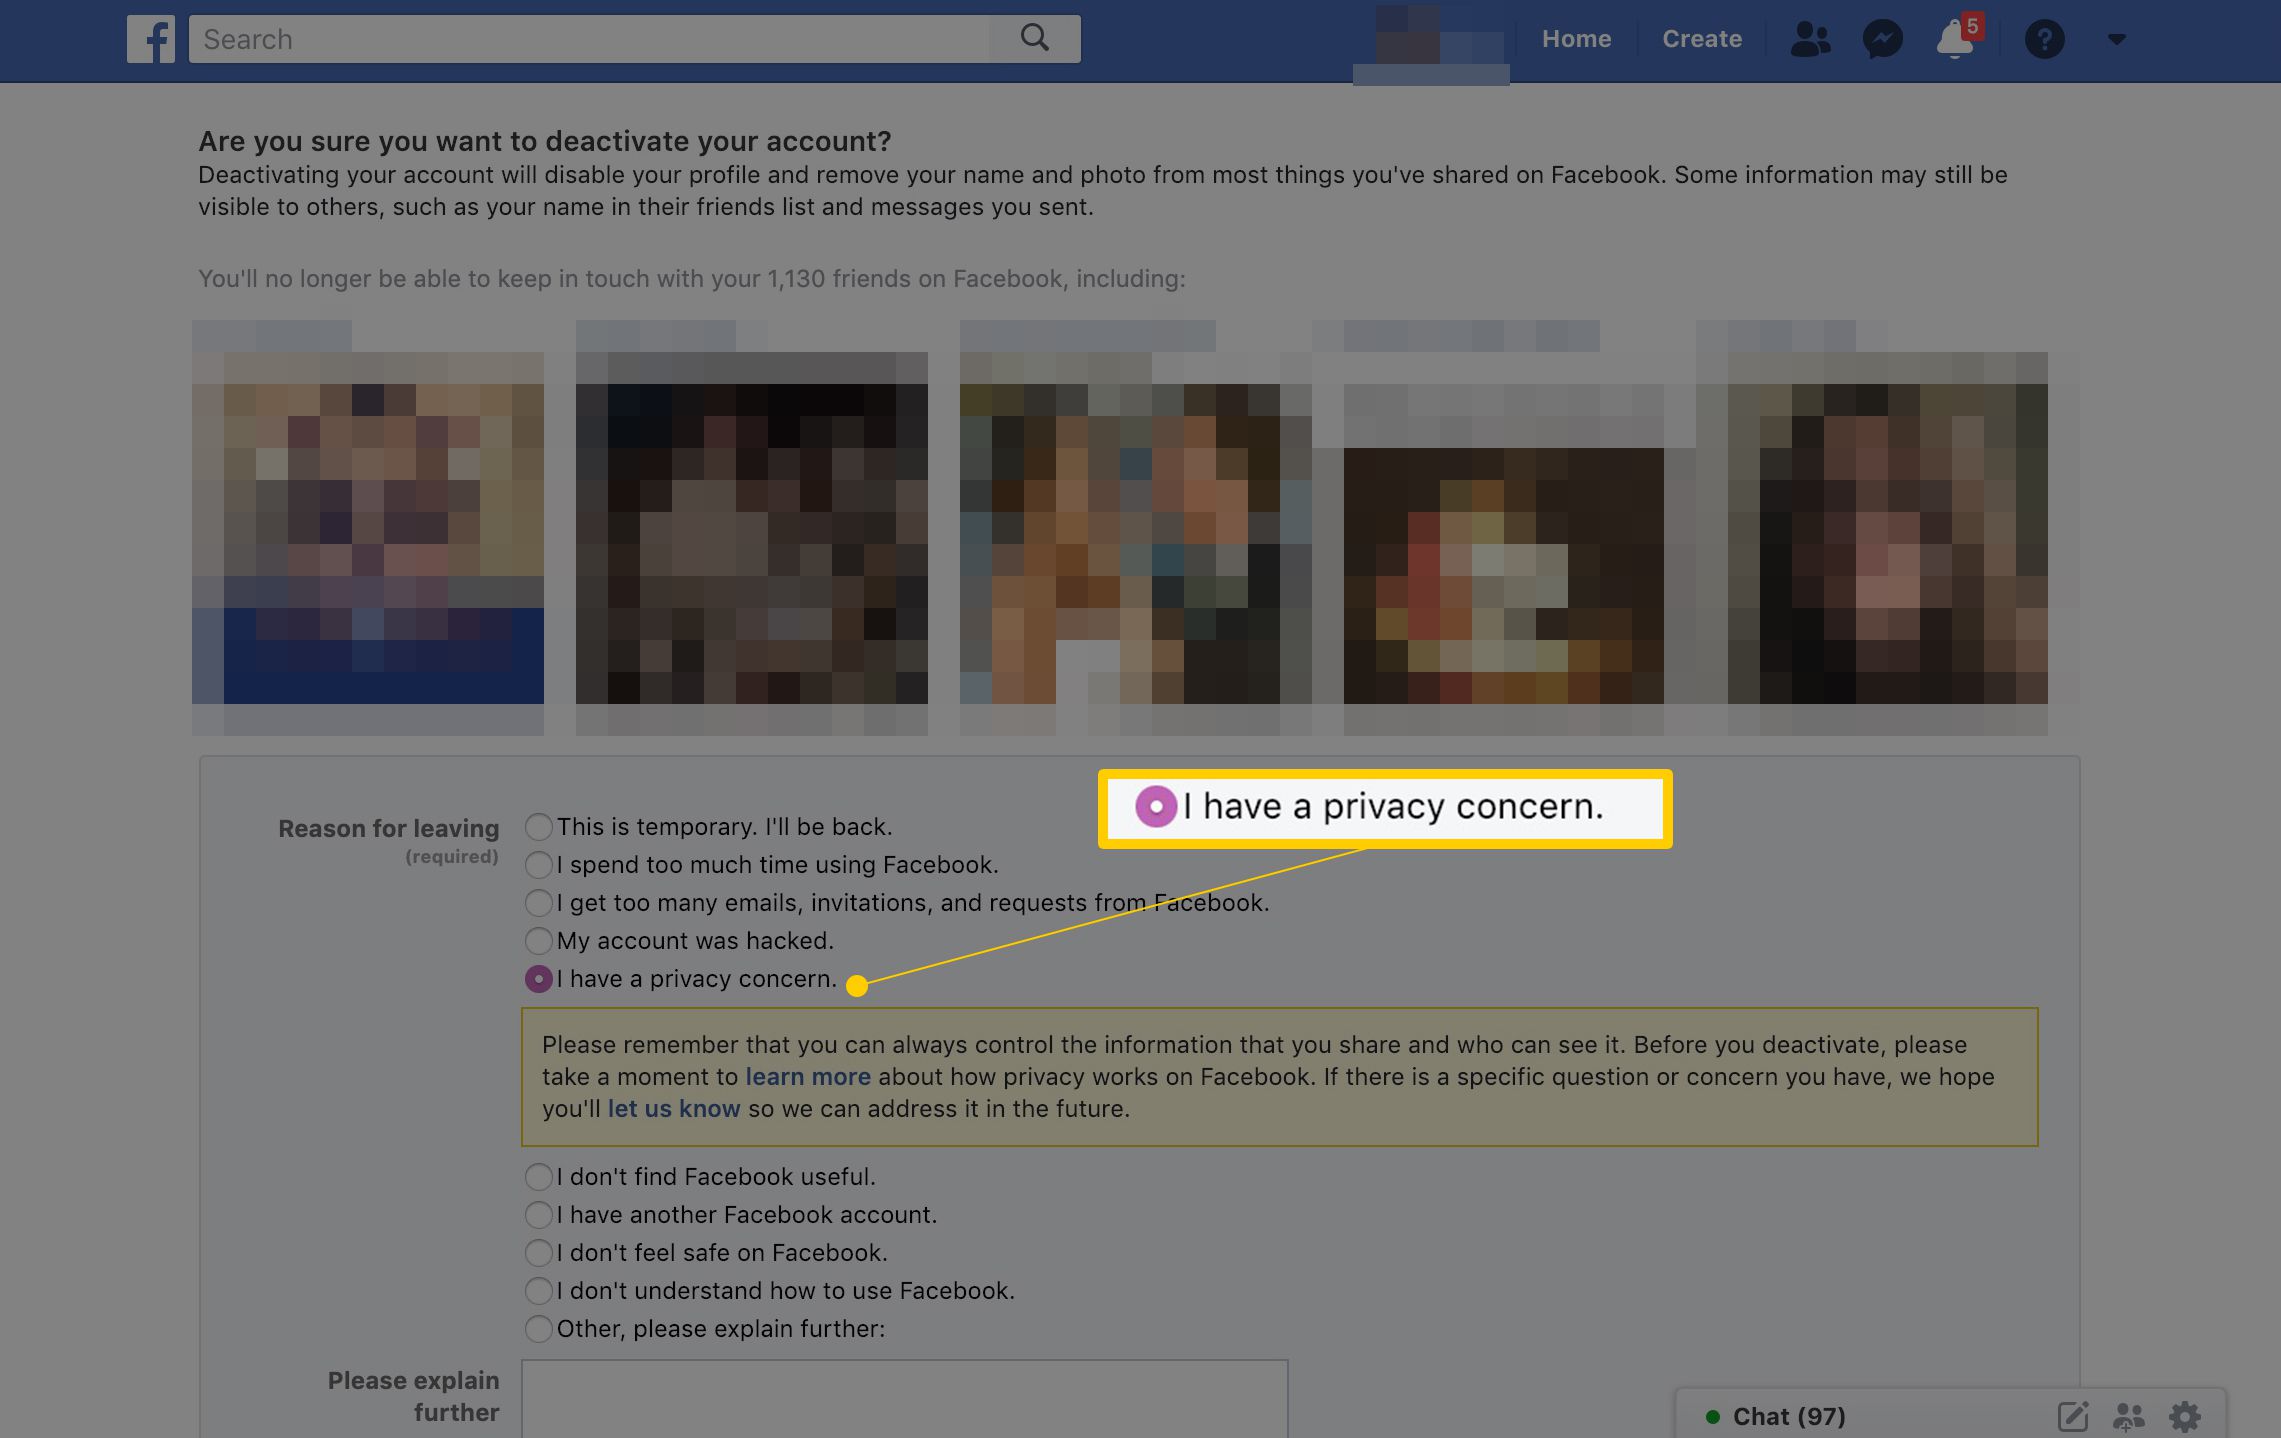 Olen huolissani Facebookin yksityisyydestä